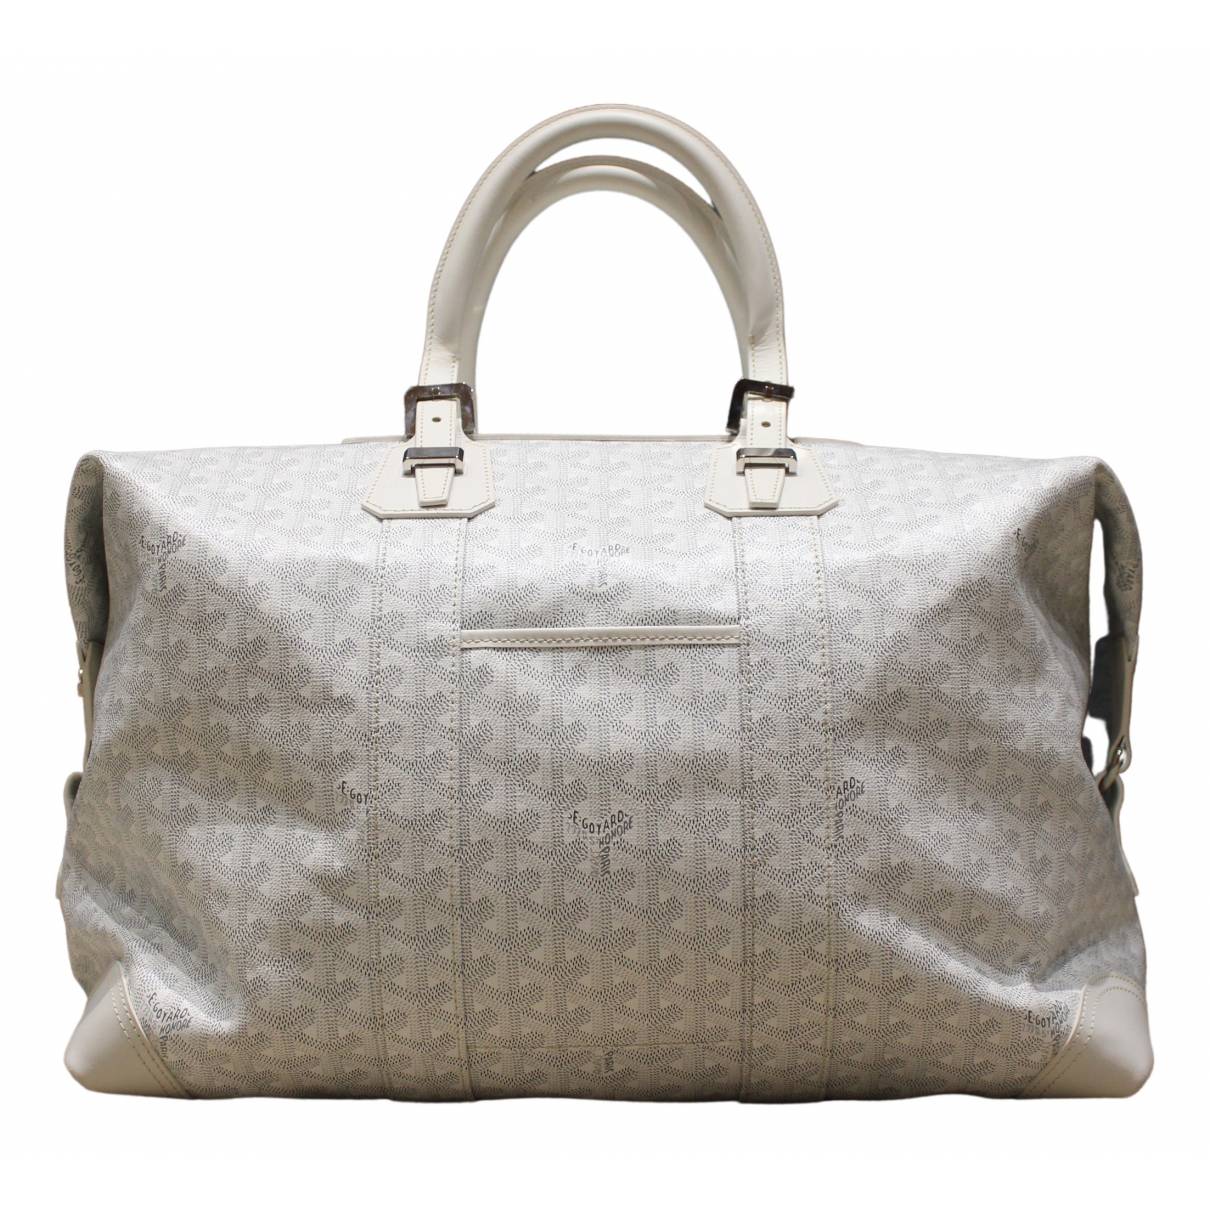 Goyard Bags for Men - Vestiaire Collective